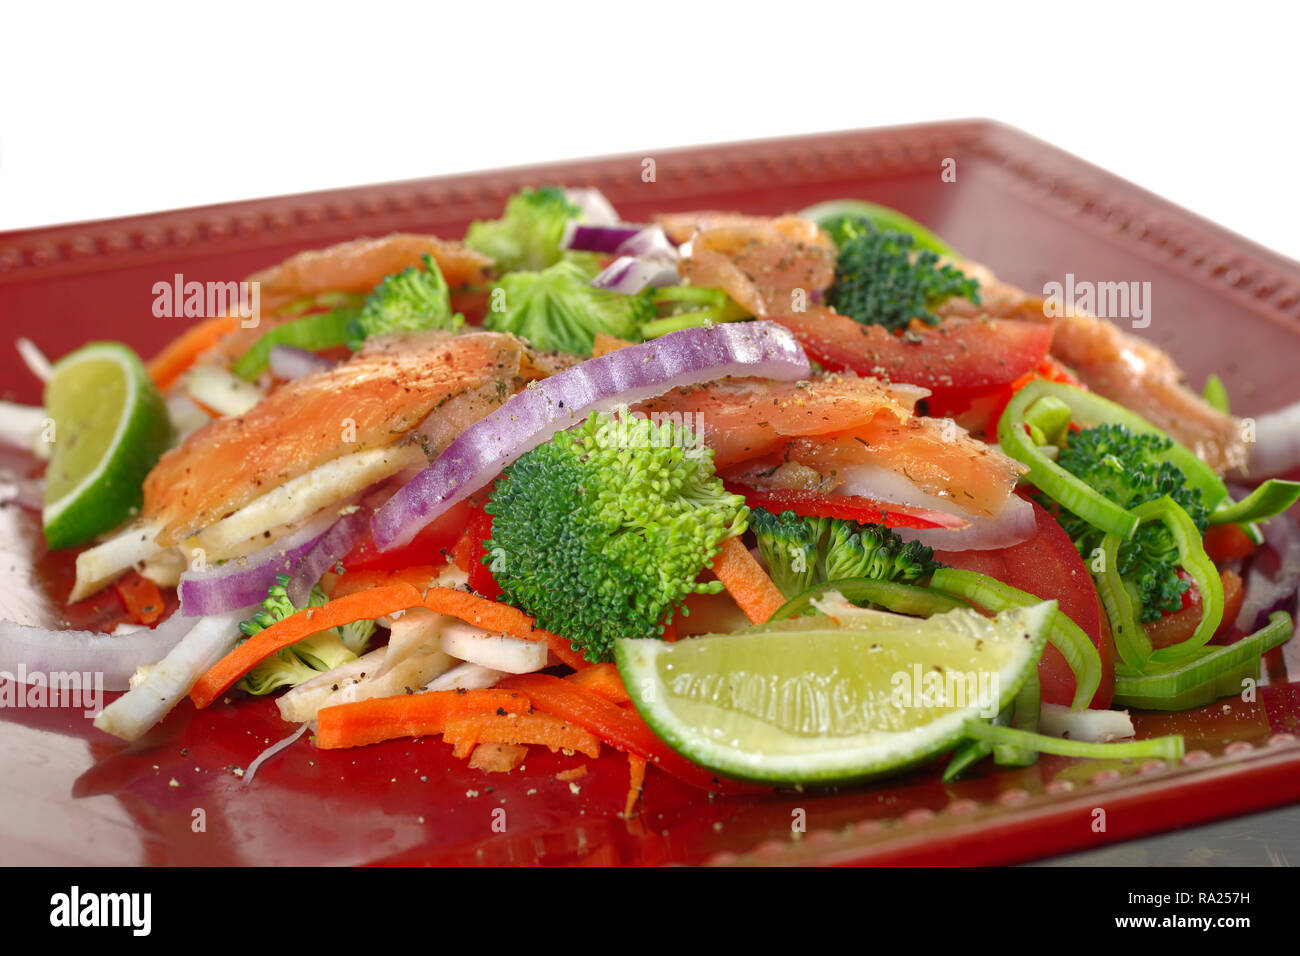 smoked salmon with vegetables and lemon salad Stock Photo